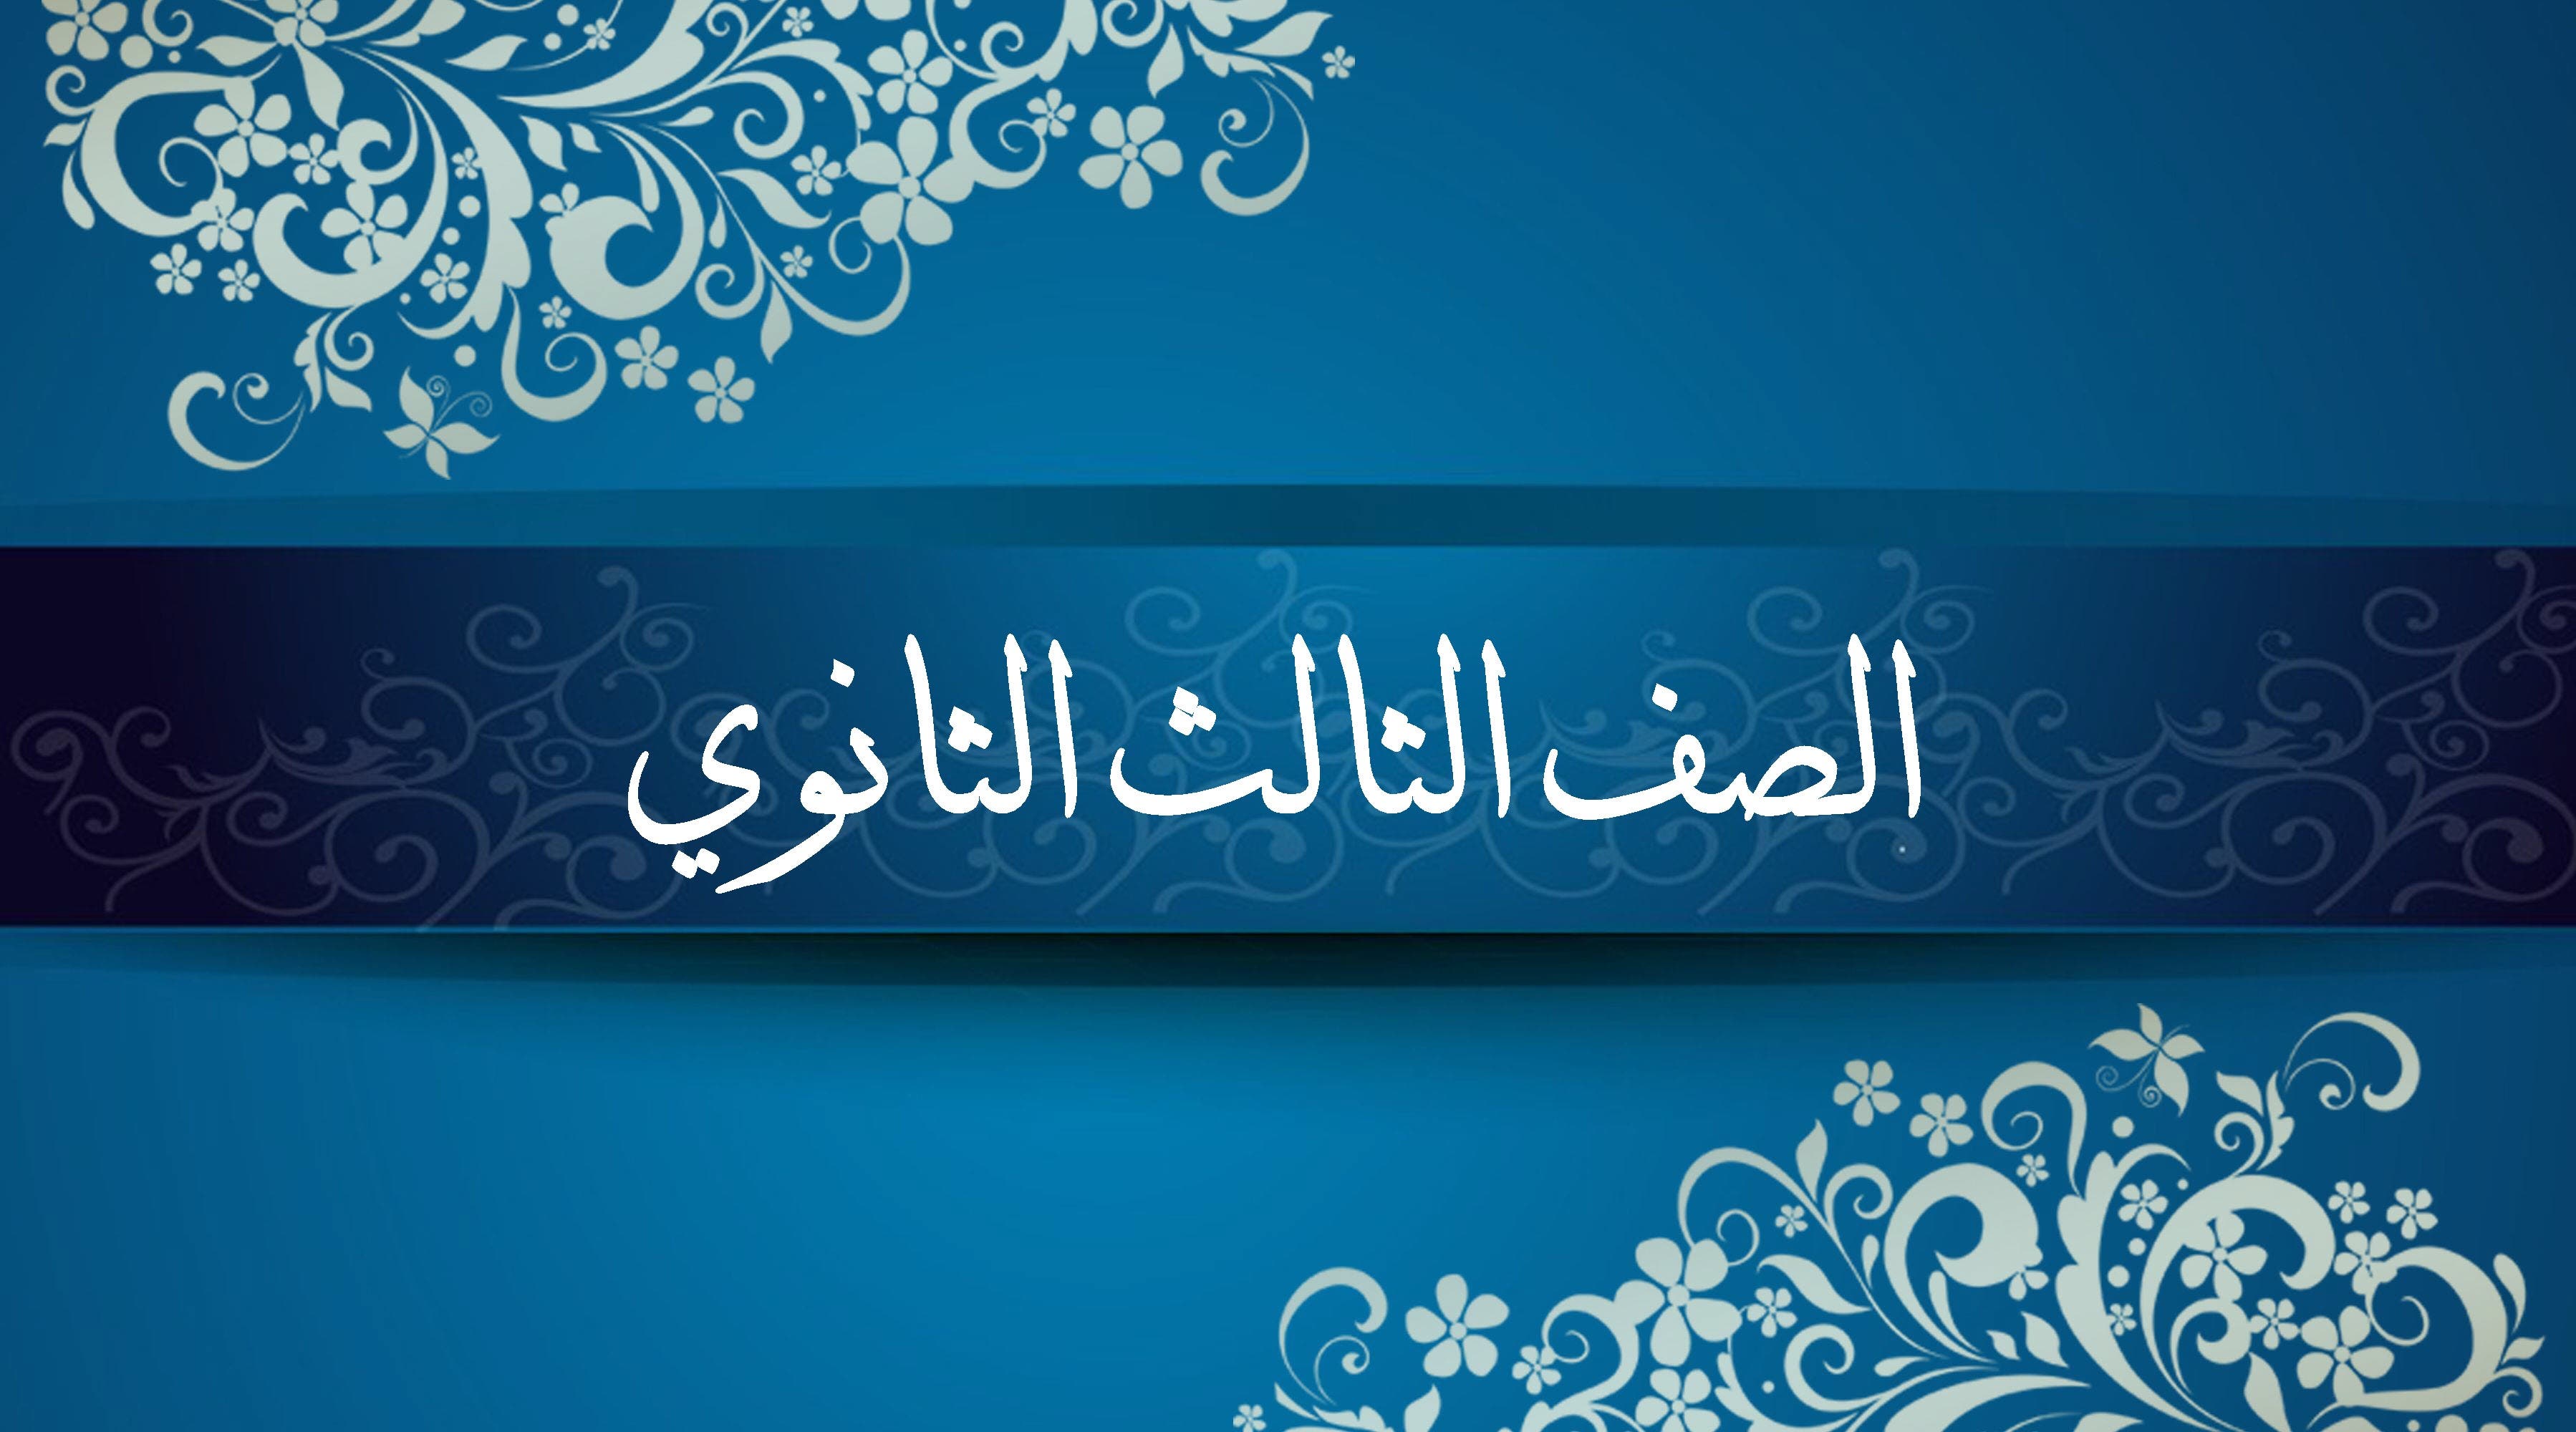 اللغة العربية للصف الثالث الثانوي للأستاذ فريد شوقي